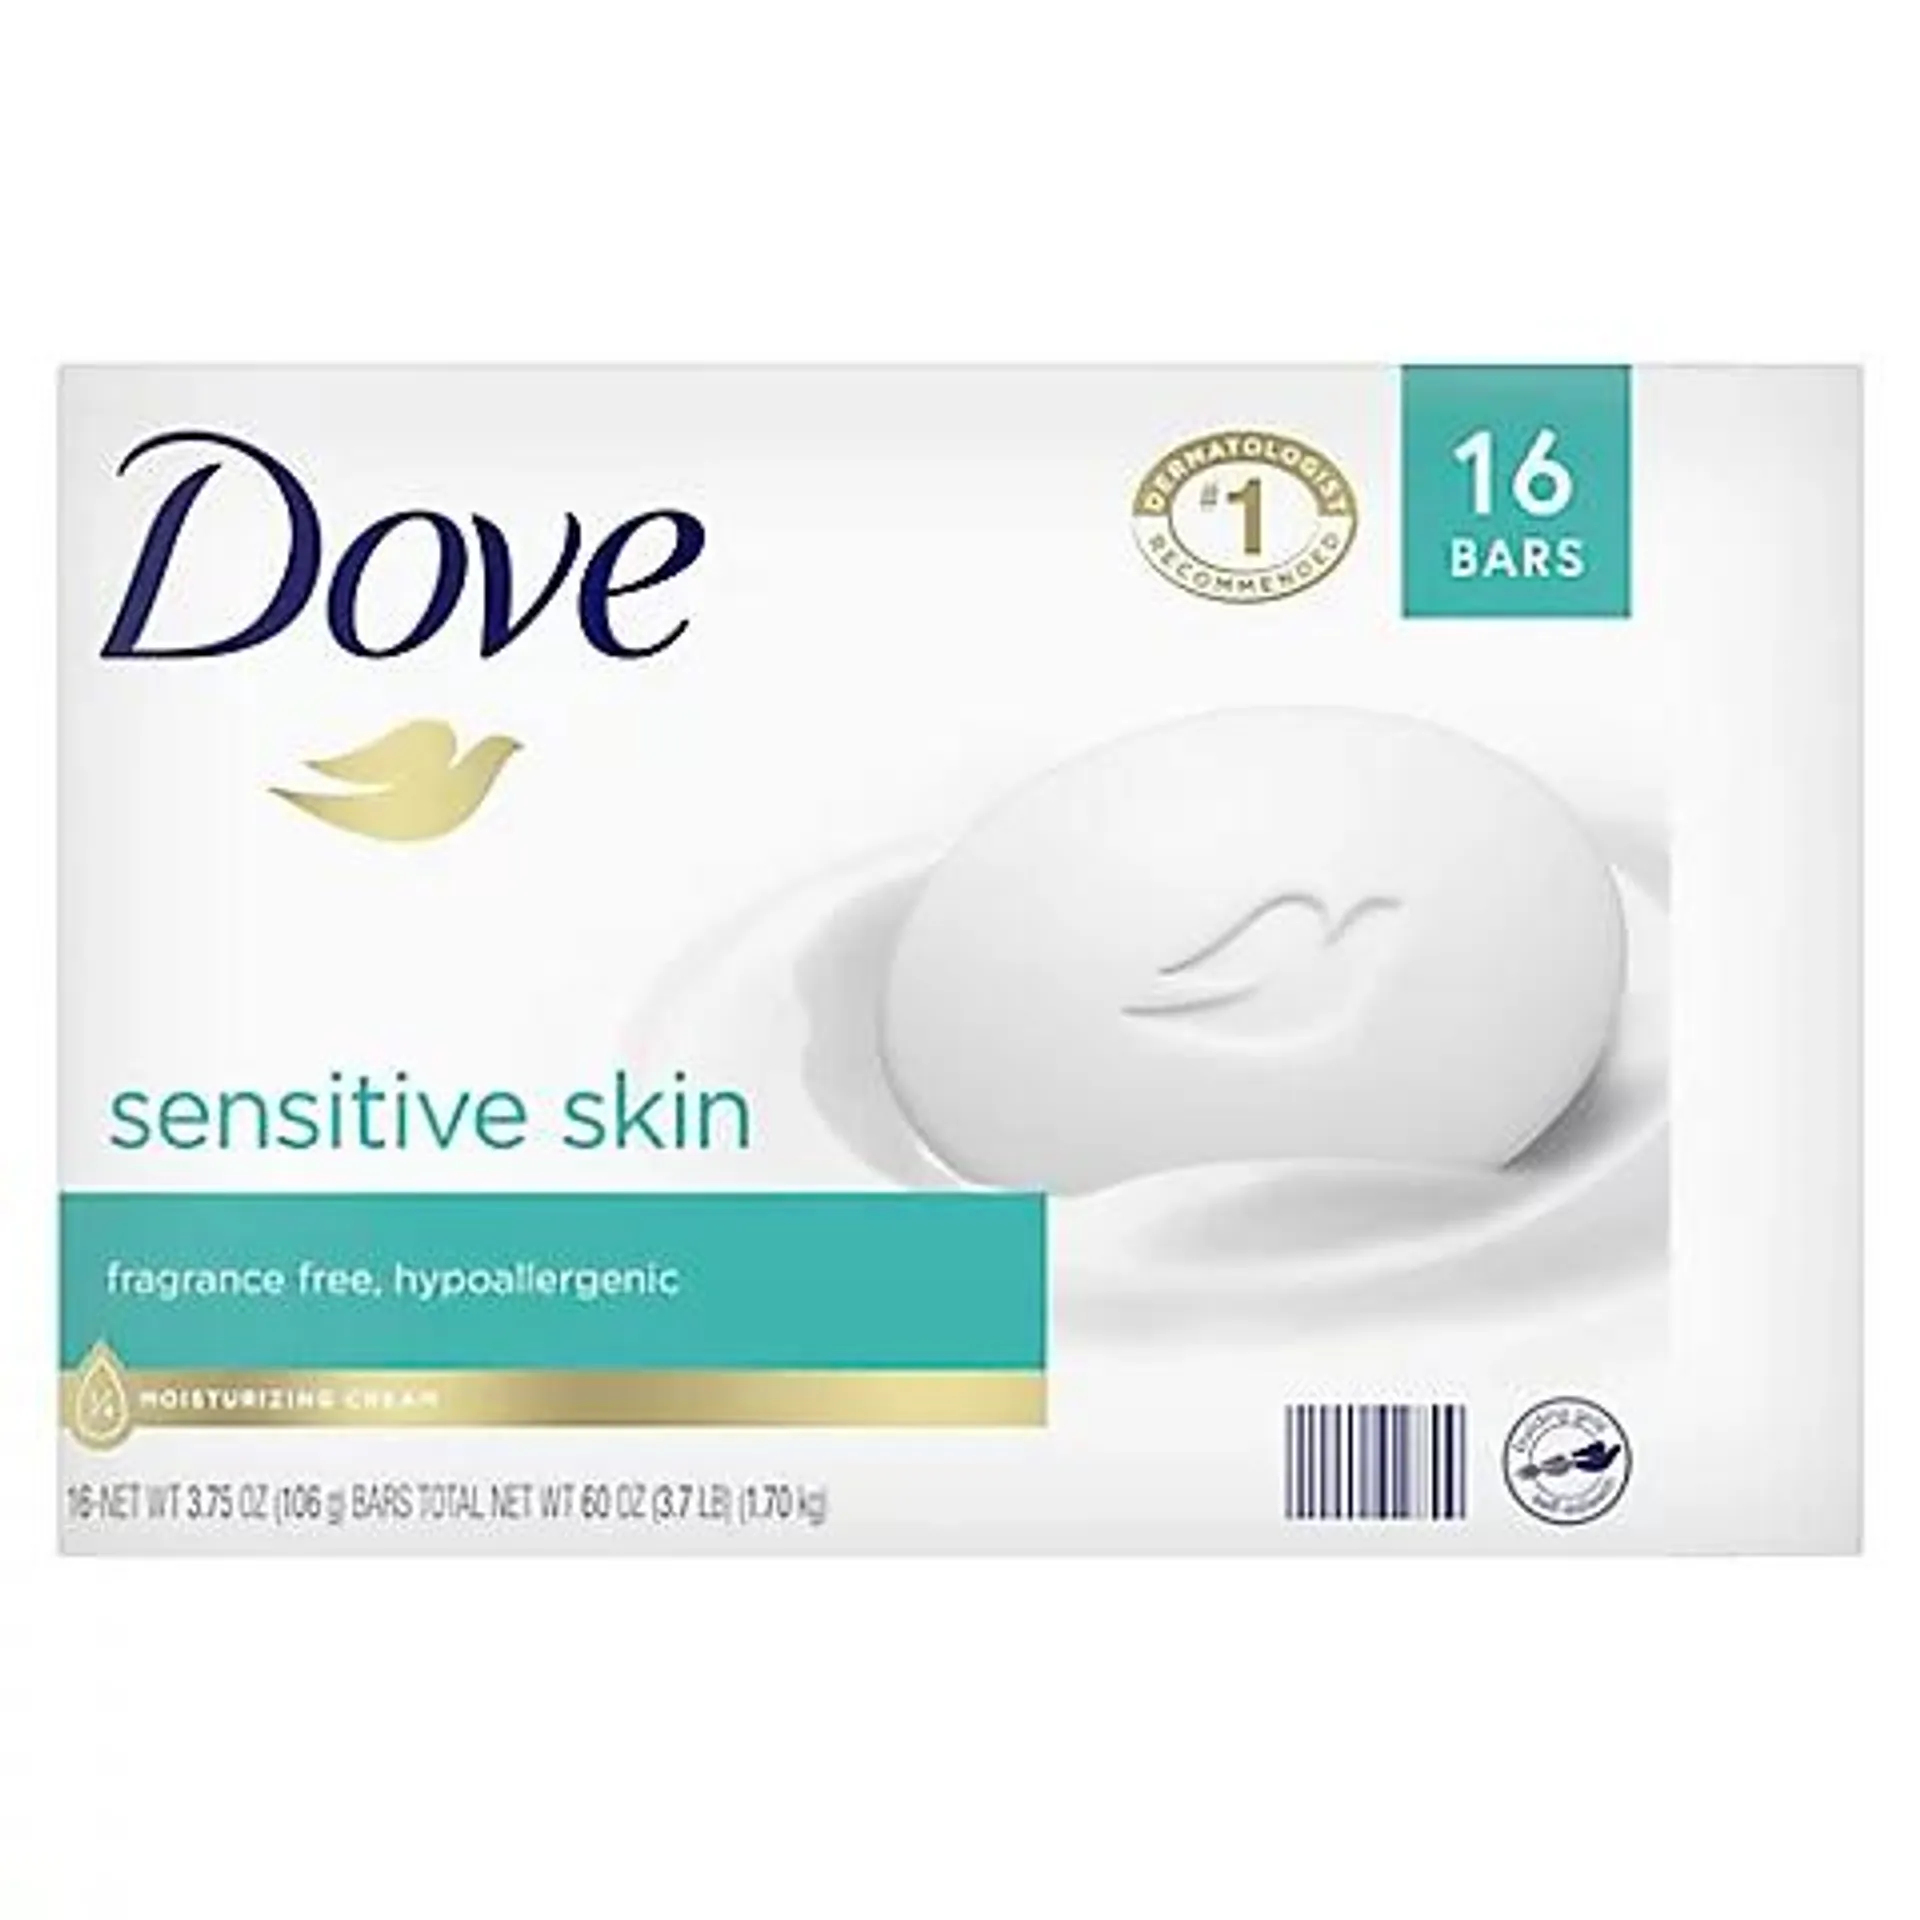 Dove Beauty Bar Sensitive Skin, 16 ct